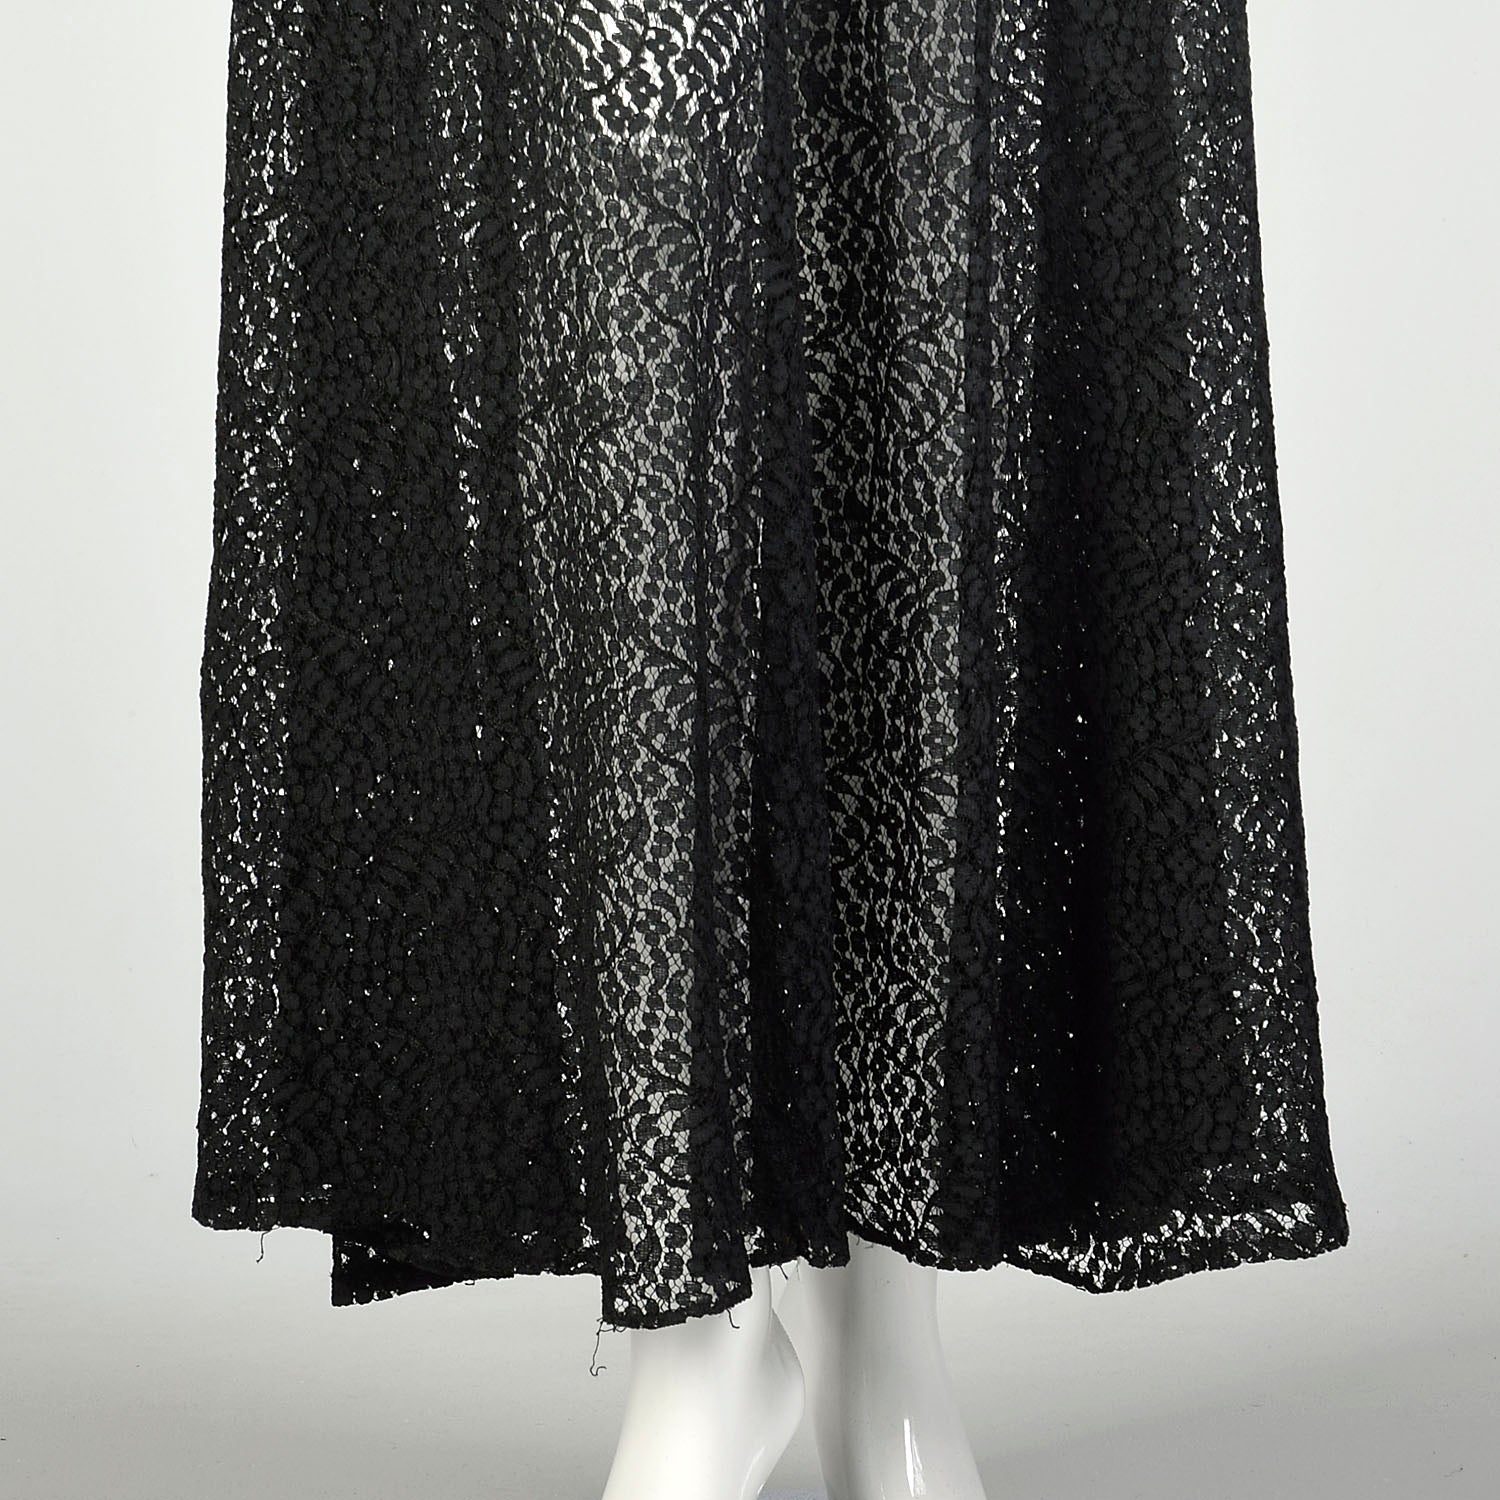 Medium 1930s Sheer Black Lace Dress Glamorous Old Hollywood